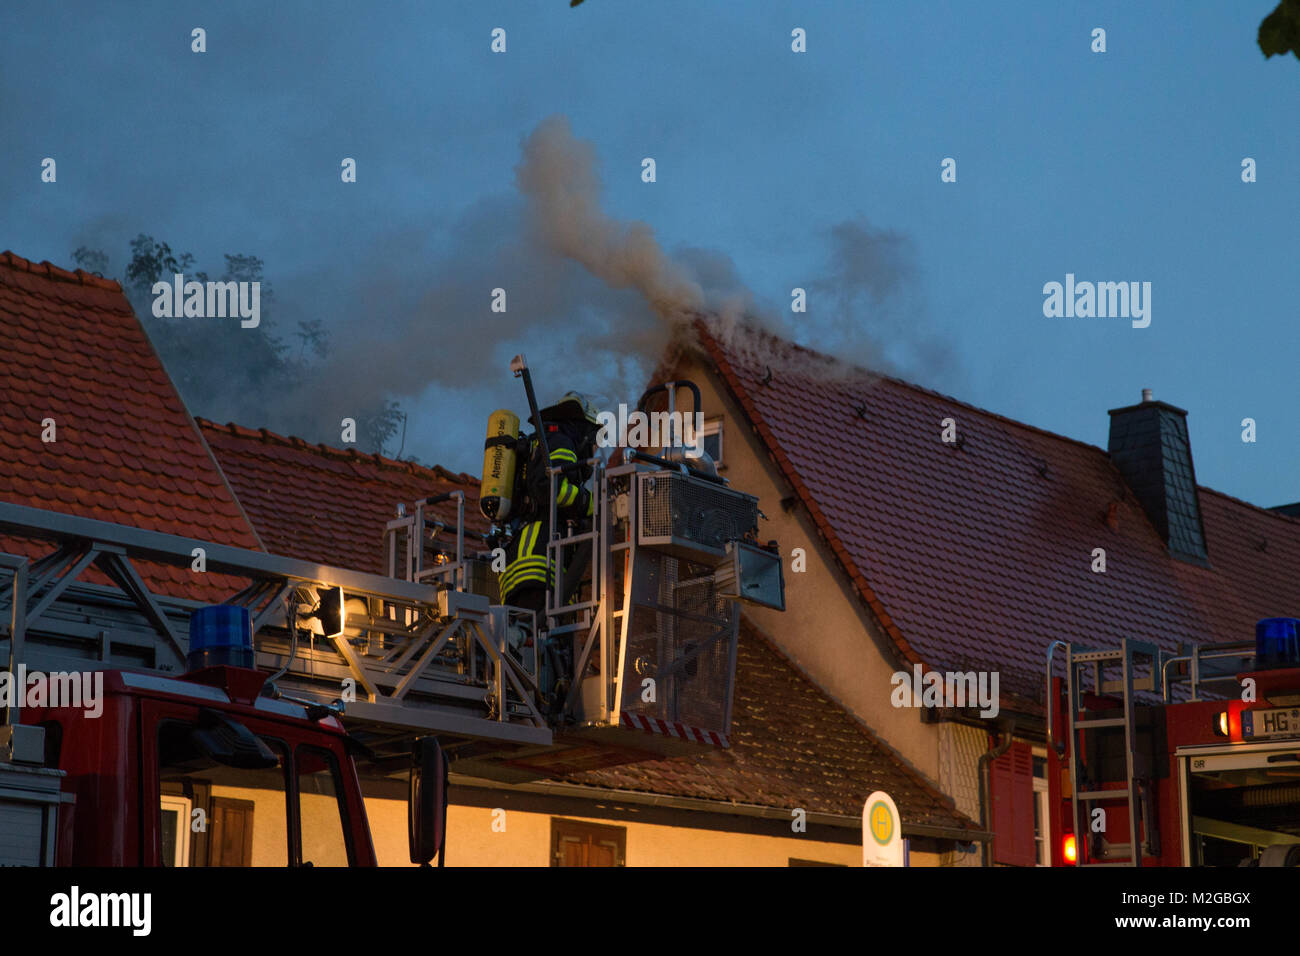 Beim Brand eines Dachstuhls ist am Sonntag Abend im hessischen Steinbach/Taunus hoher Sachschaden entstanden. Das Feuer war im Bereich eines angrenzenden Carports ausgebrochen und hatte sich über einen Baum bis ans Gebäude gefressen. +++ 3S PHOTO / Foto: Sven-Sebastian Sajak Stock Photo